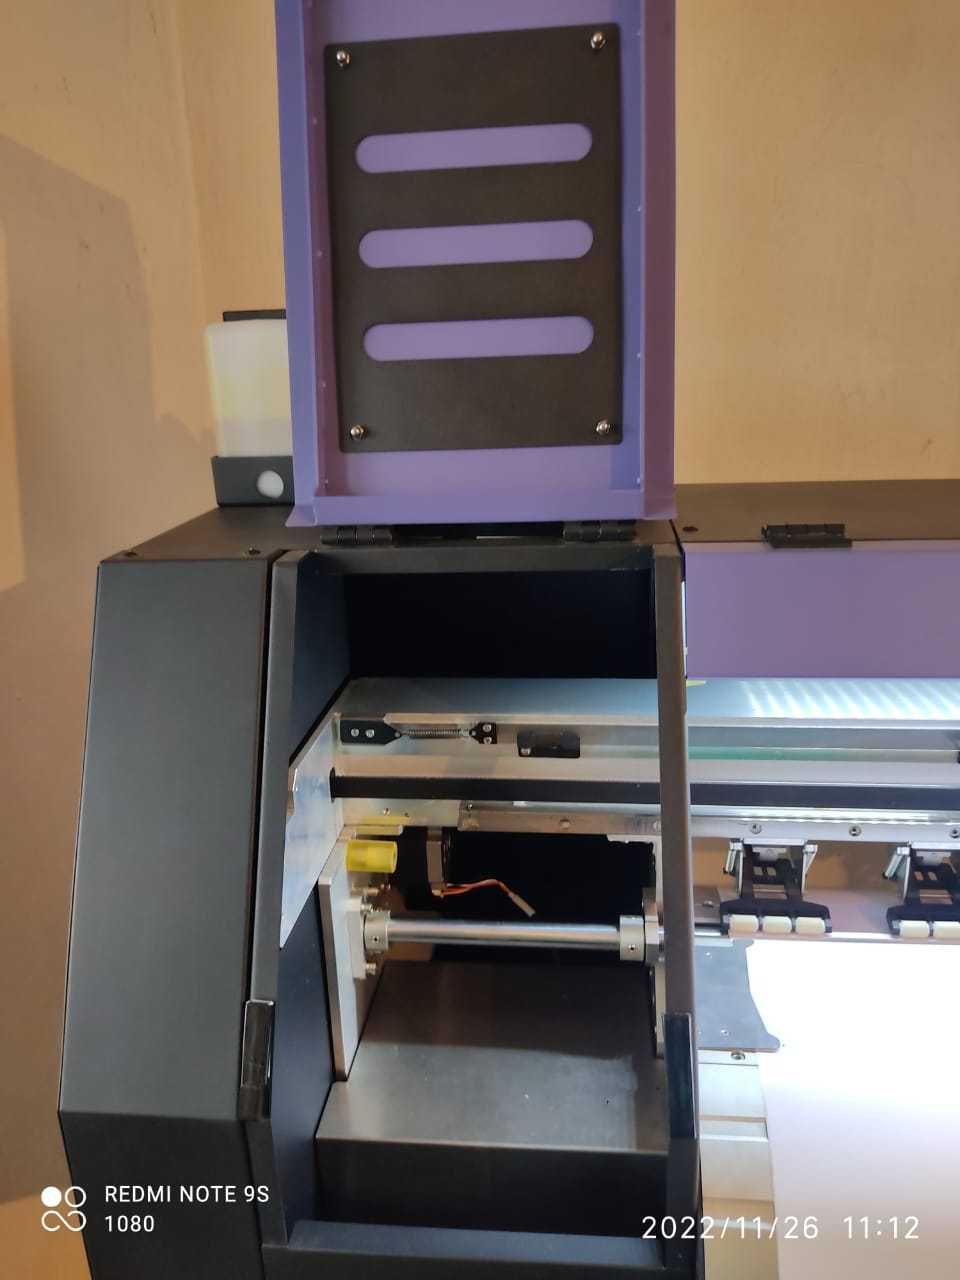 Широкоформатный принтер Icontek 1600 cm